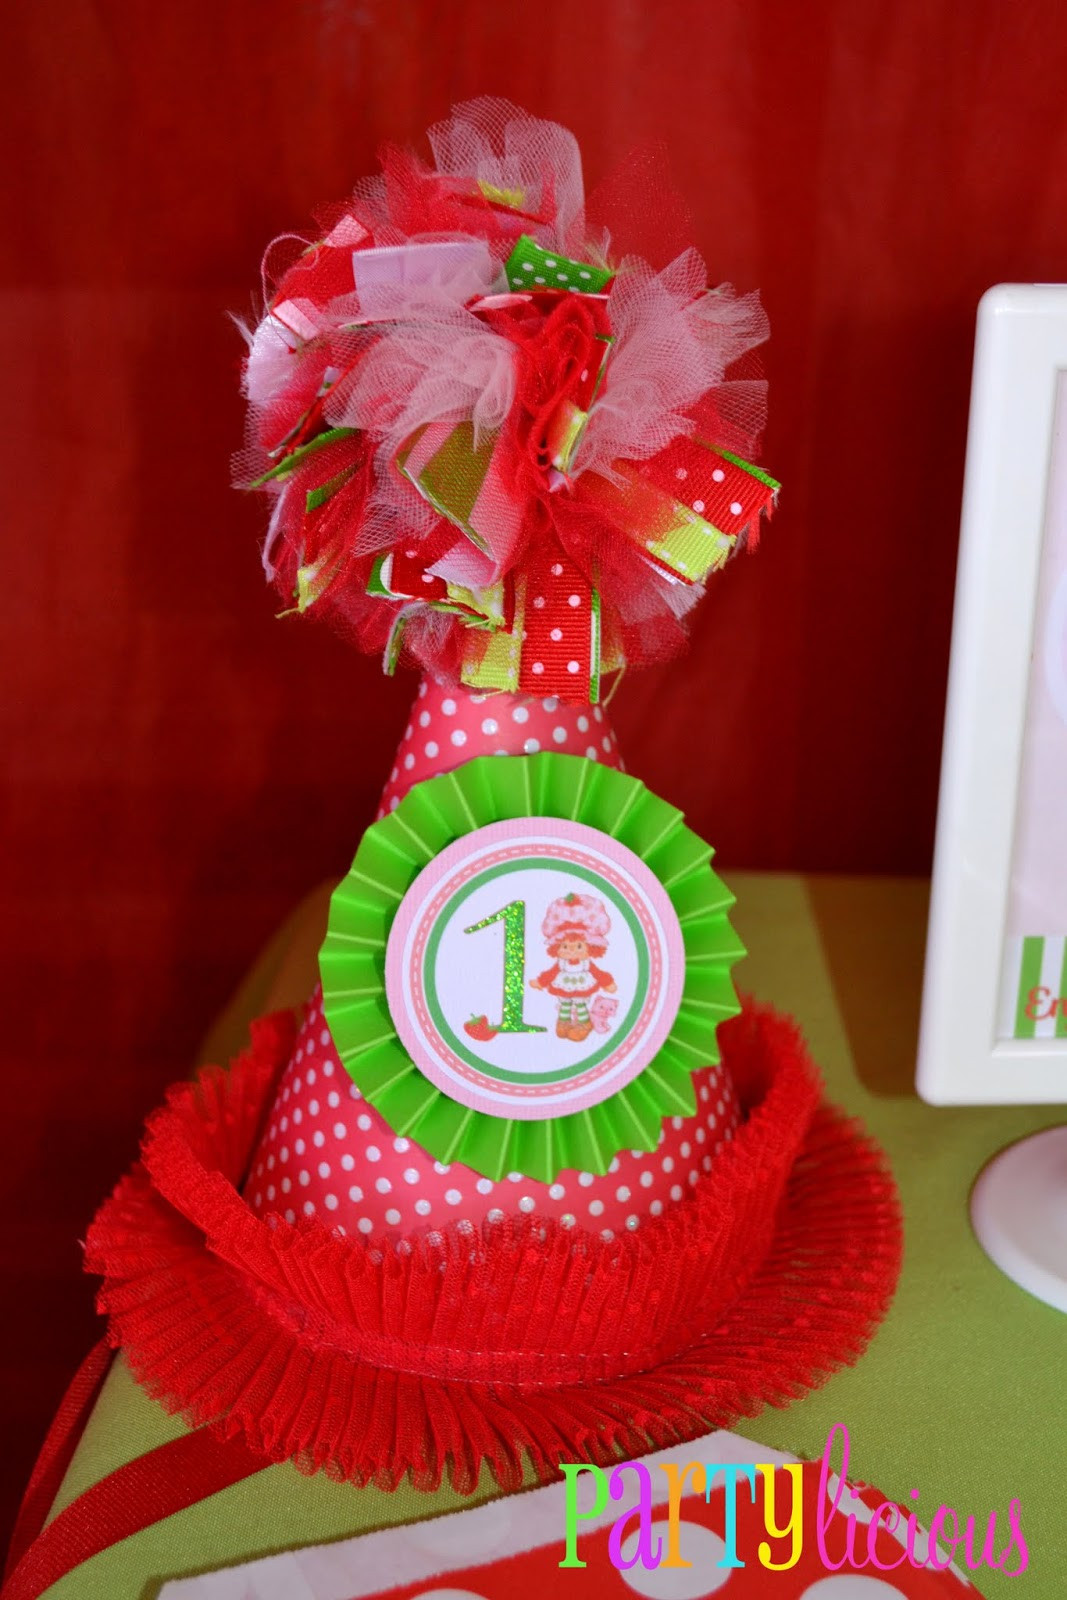 Strawberry Shortcake Birthday Decorations
 Partylicious Events PR Vintage Strawberry Shortcake